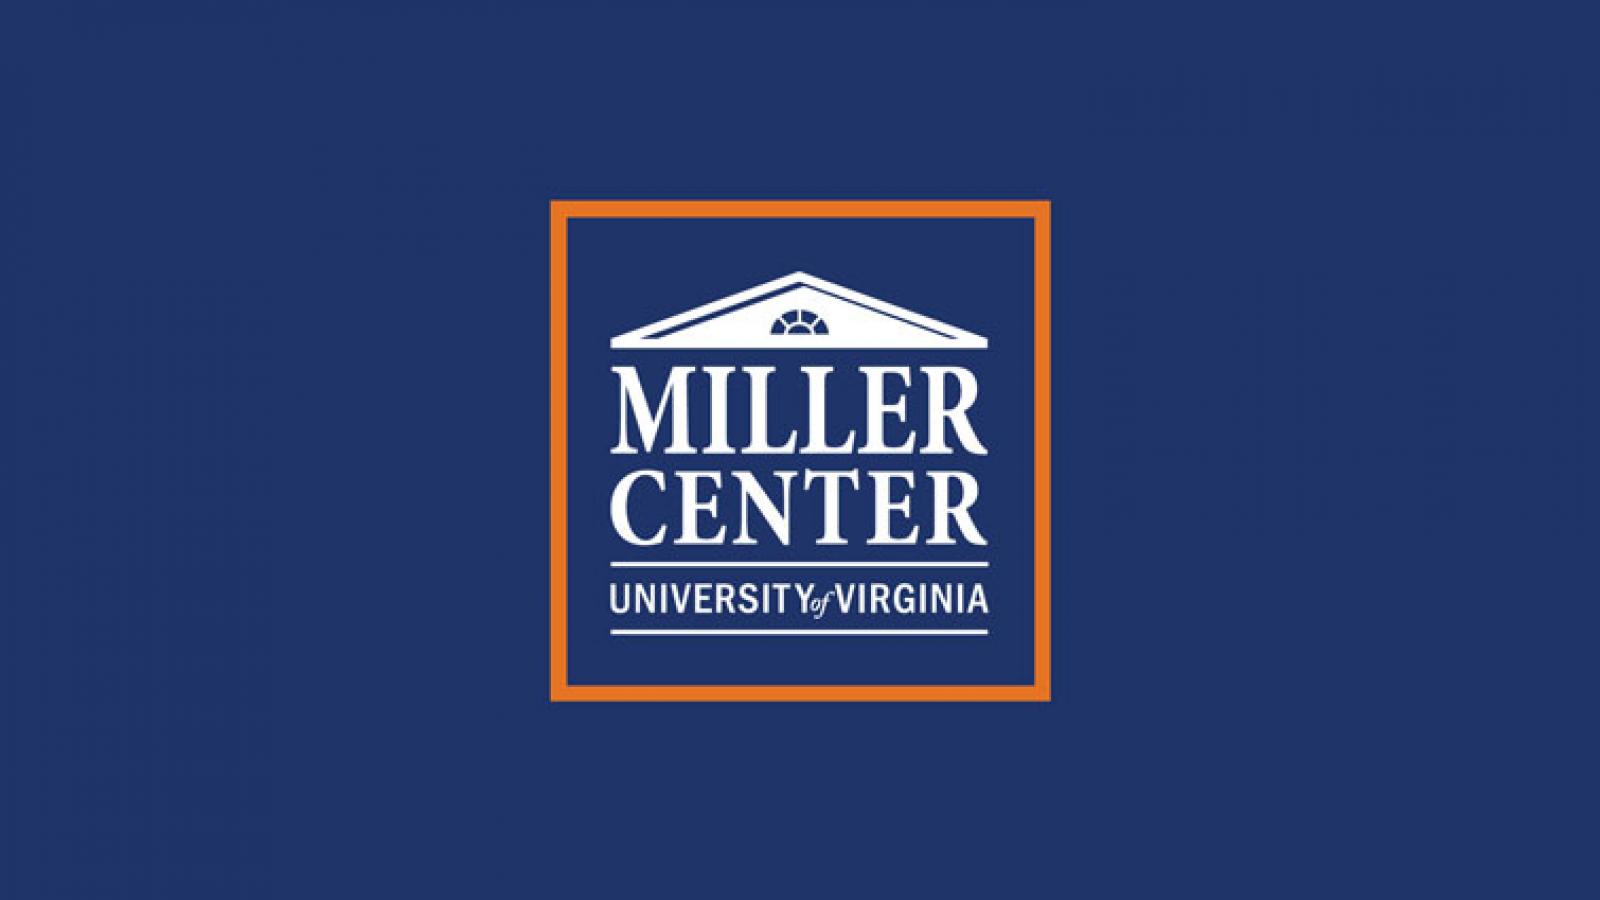 Miller Center logo